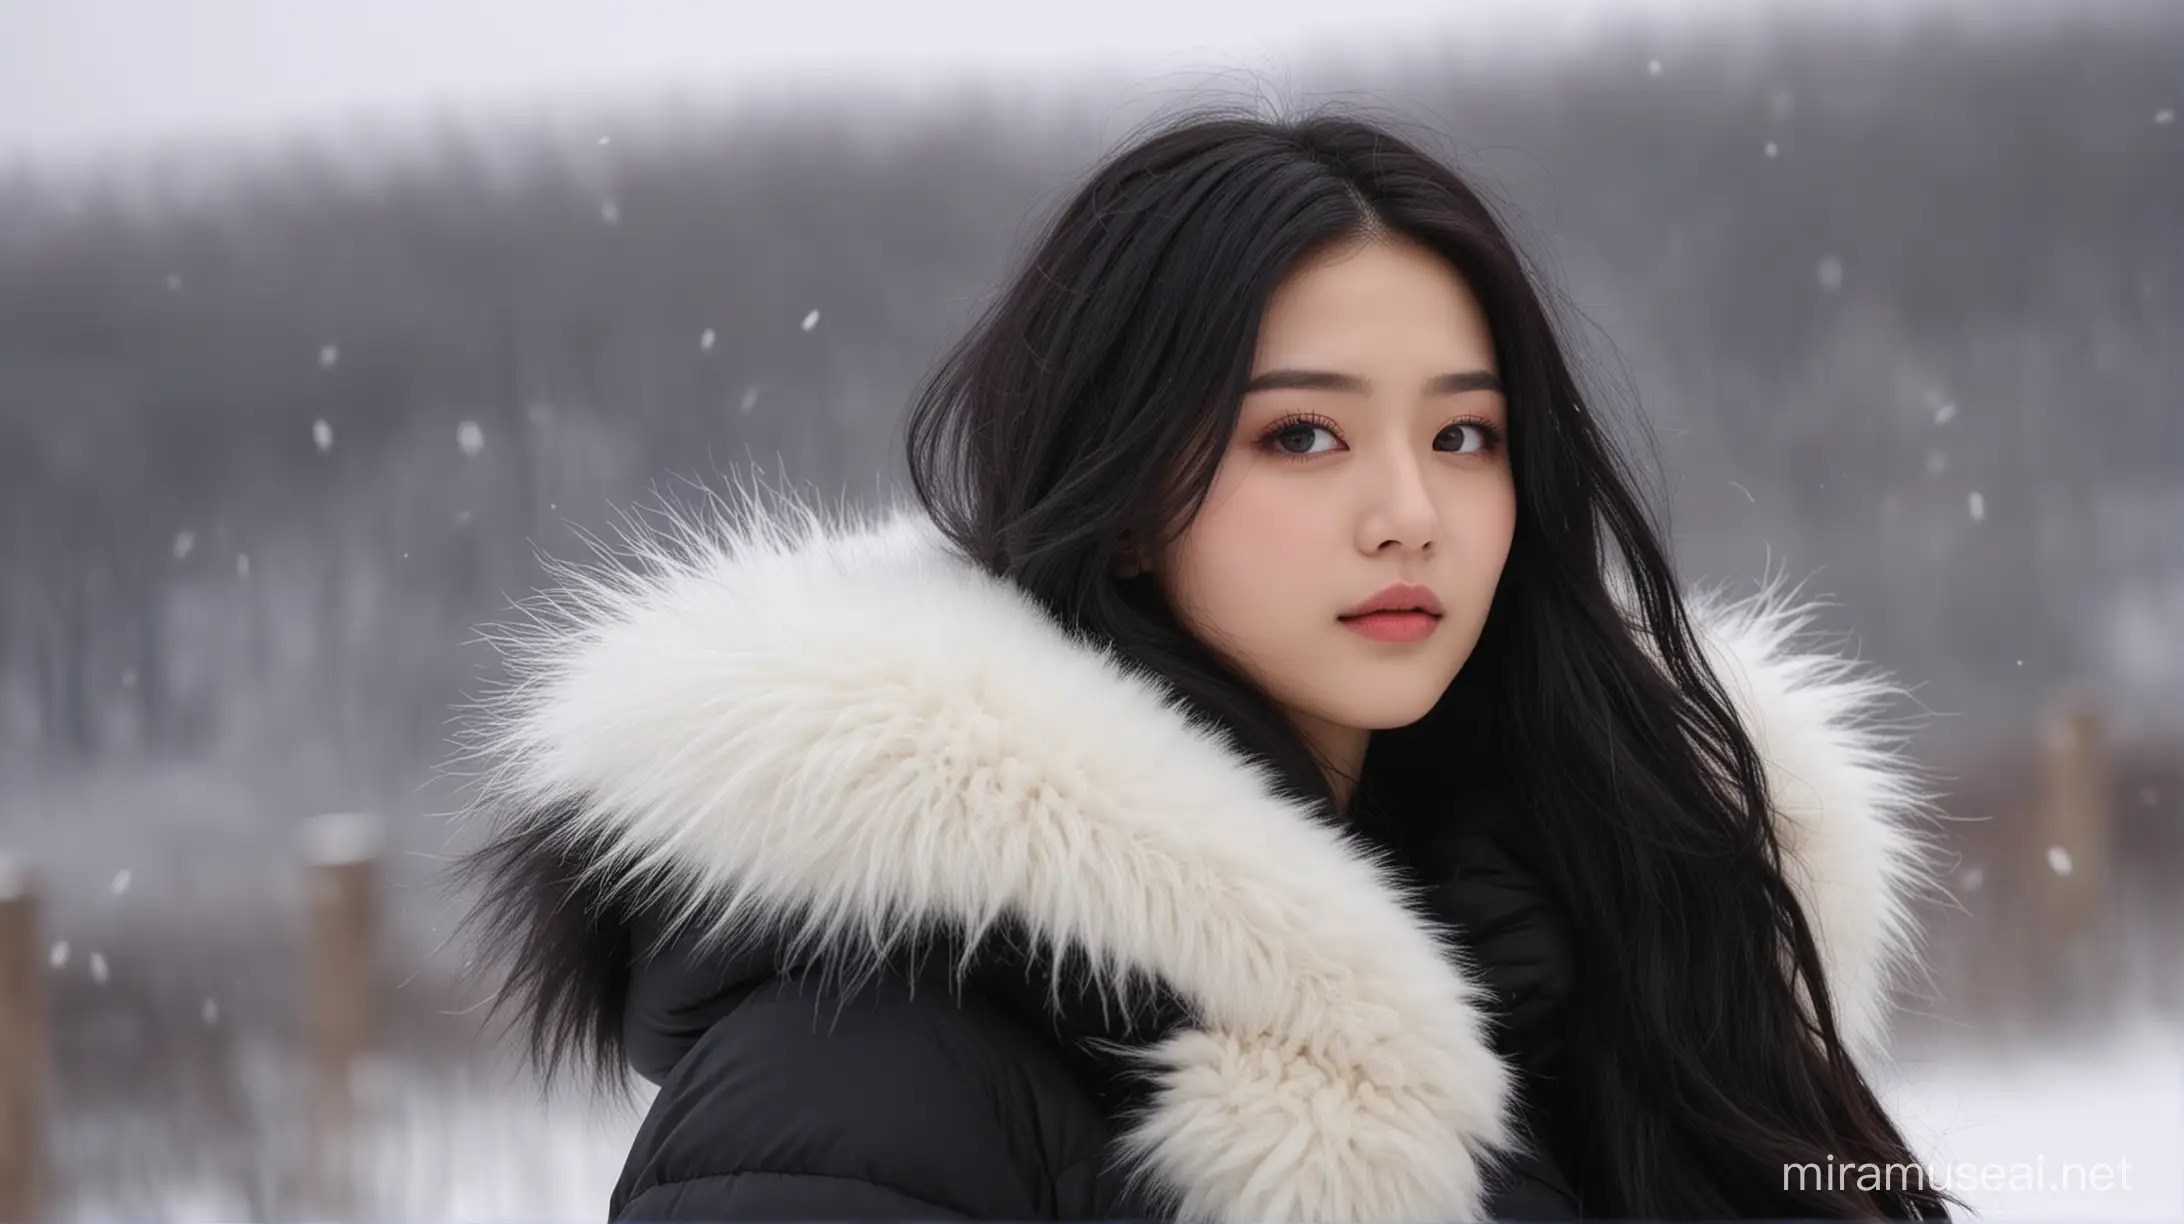 Elegant Beauty in Oriental Winter Wear Amidst Snowy Winds